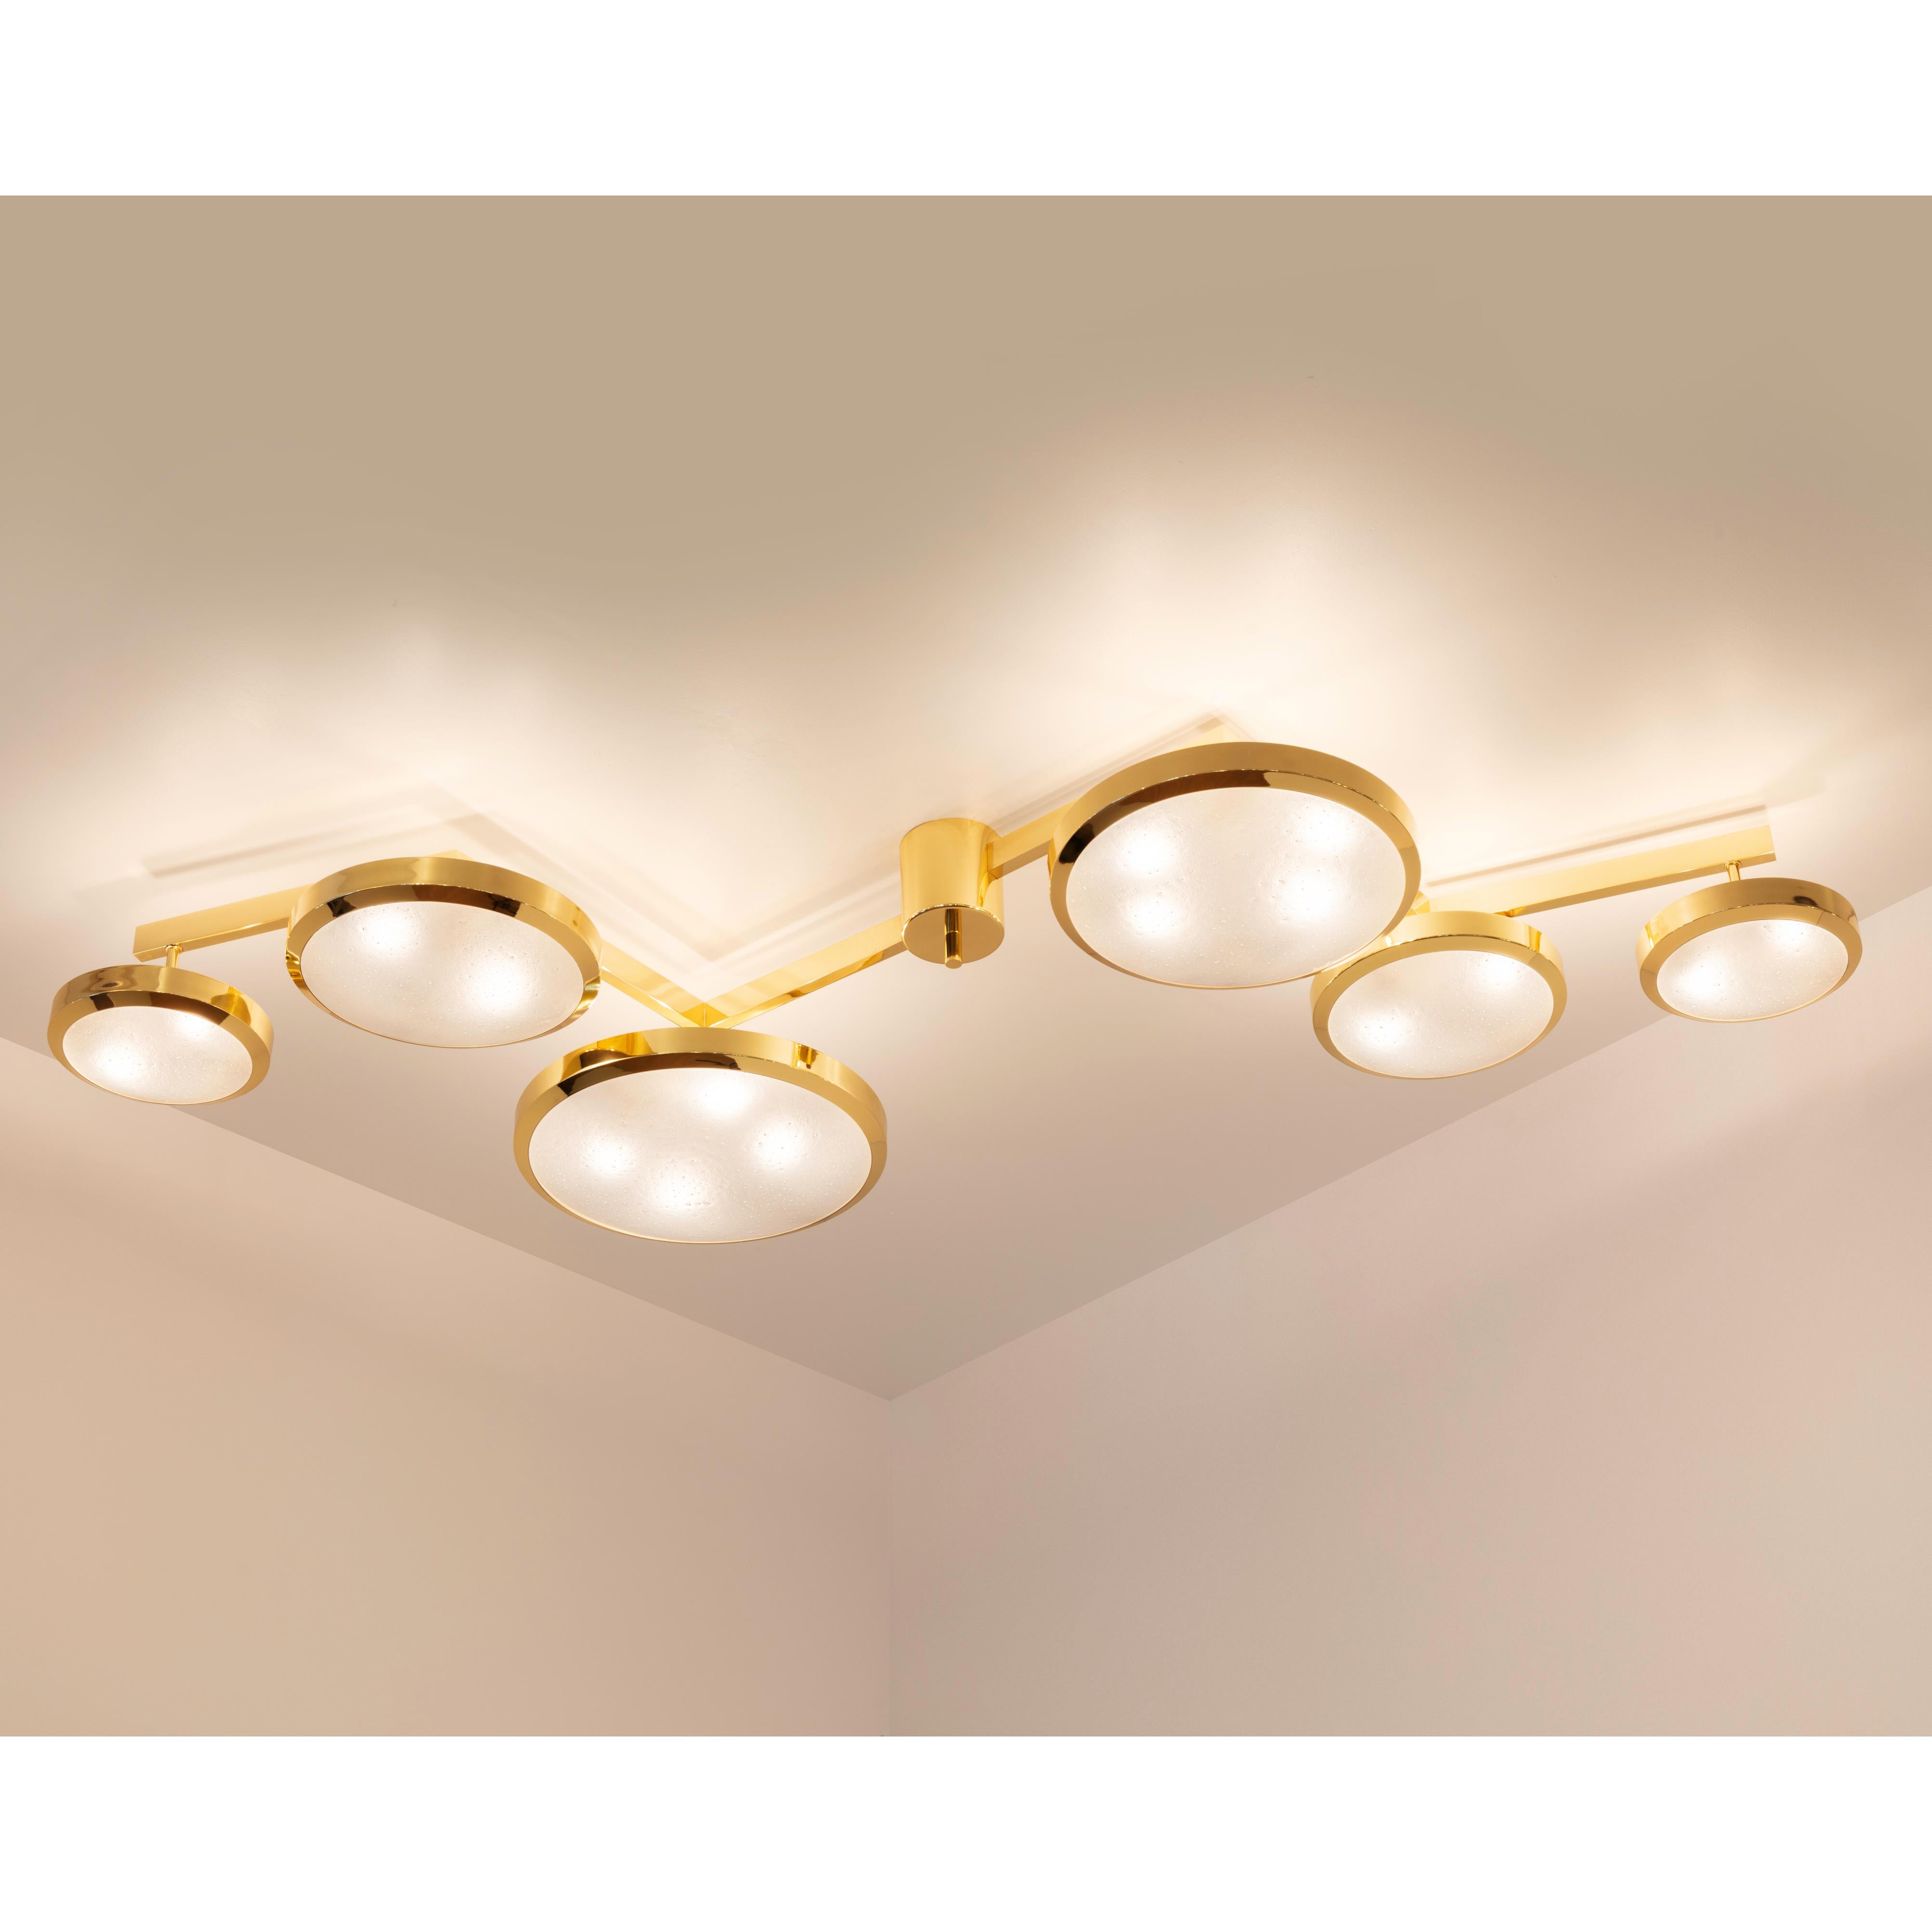 Brass Geometria Sospesa Ceiling Light by Gaspare Asaro-Brunito Nero Finish For Sale